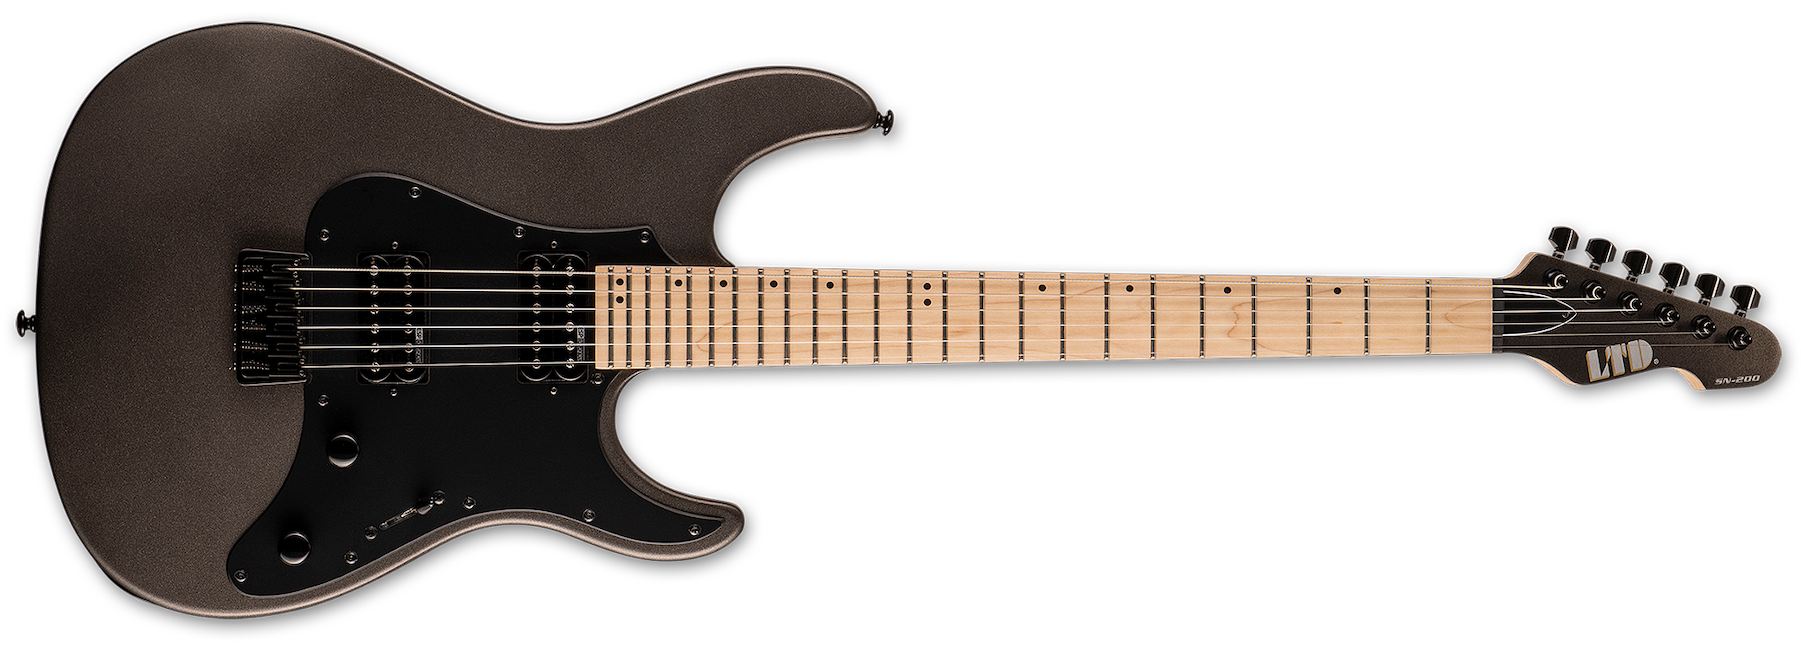 ESP LTD SN-200HT Electric Guitar - Charcoal Metallic Satin